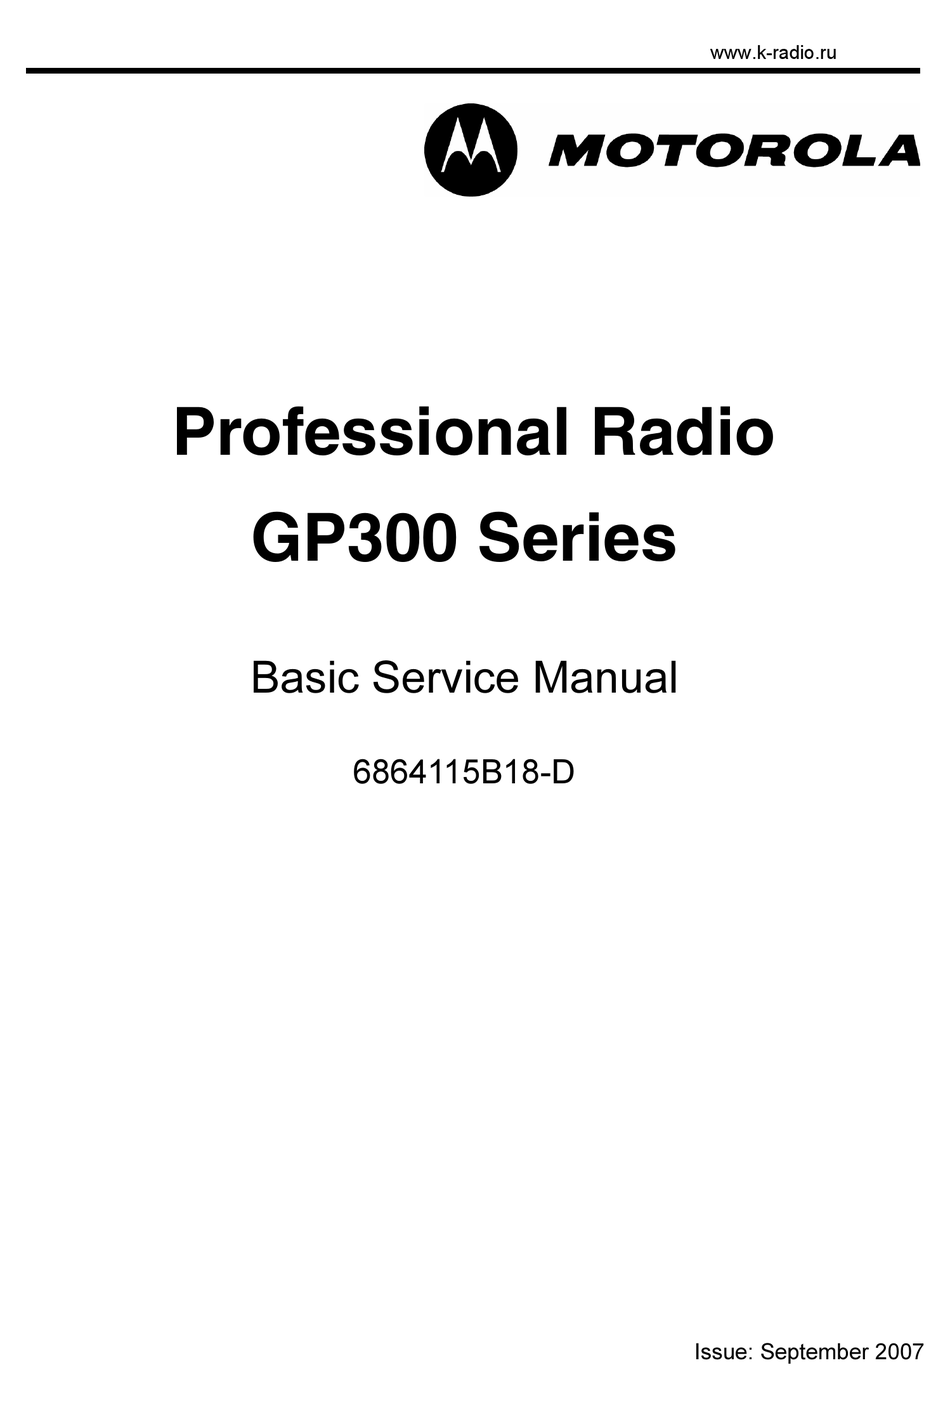 motorola professional radio cps free software download